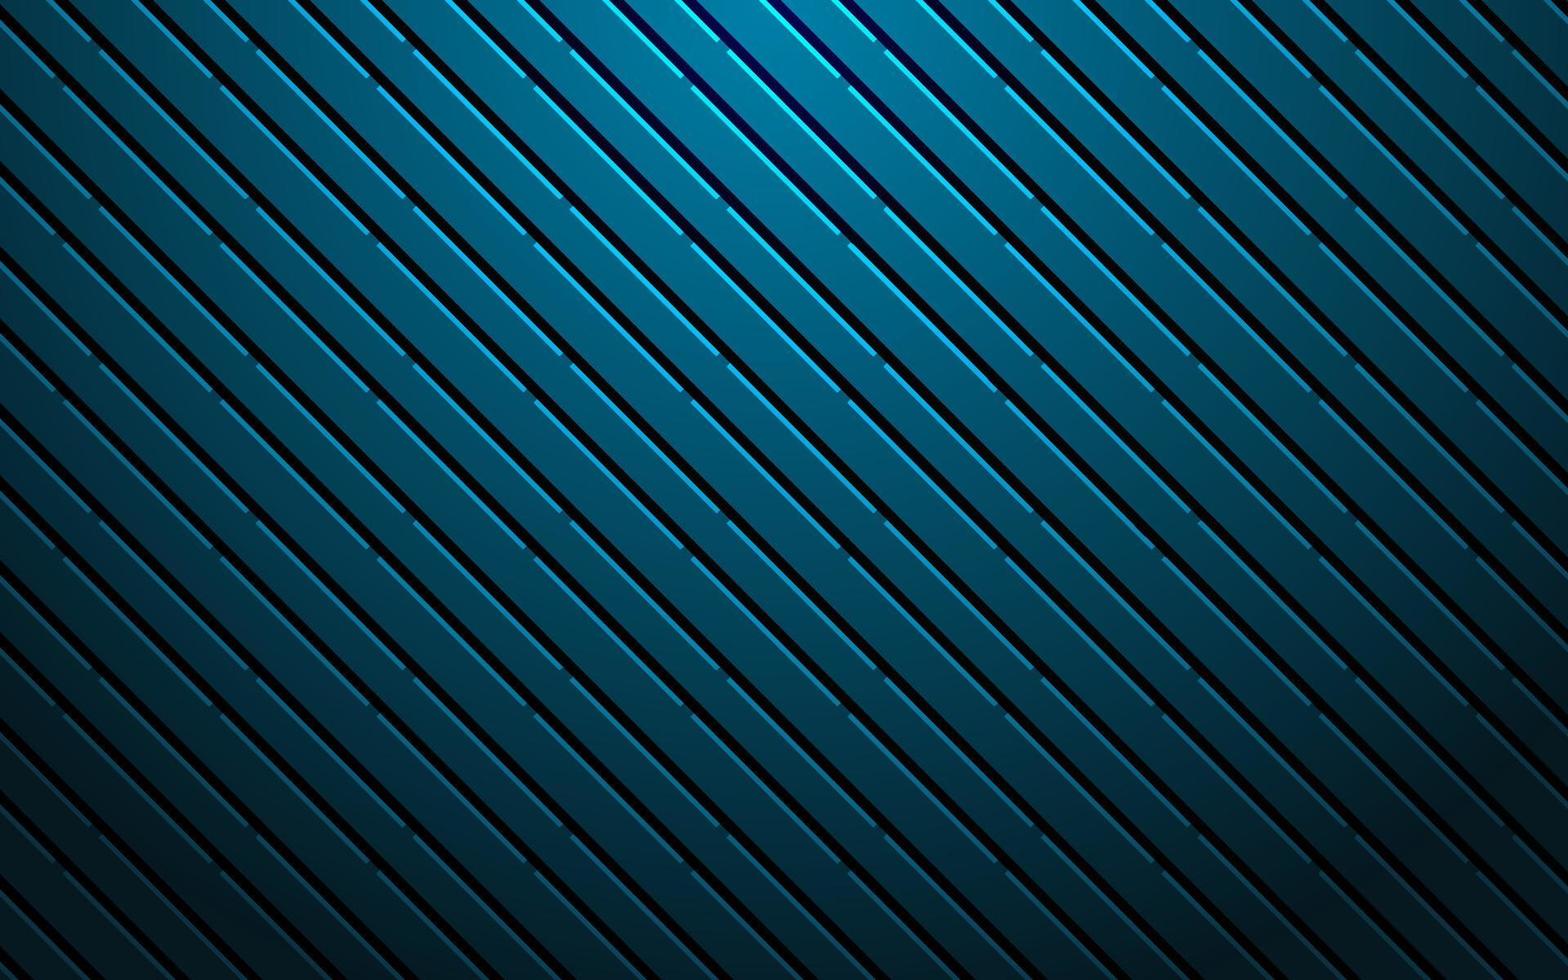 sfondo metallico astratto con linee diagonali blu. illustrazione di strisce vettoriali oblique